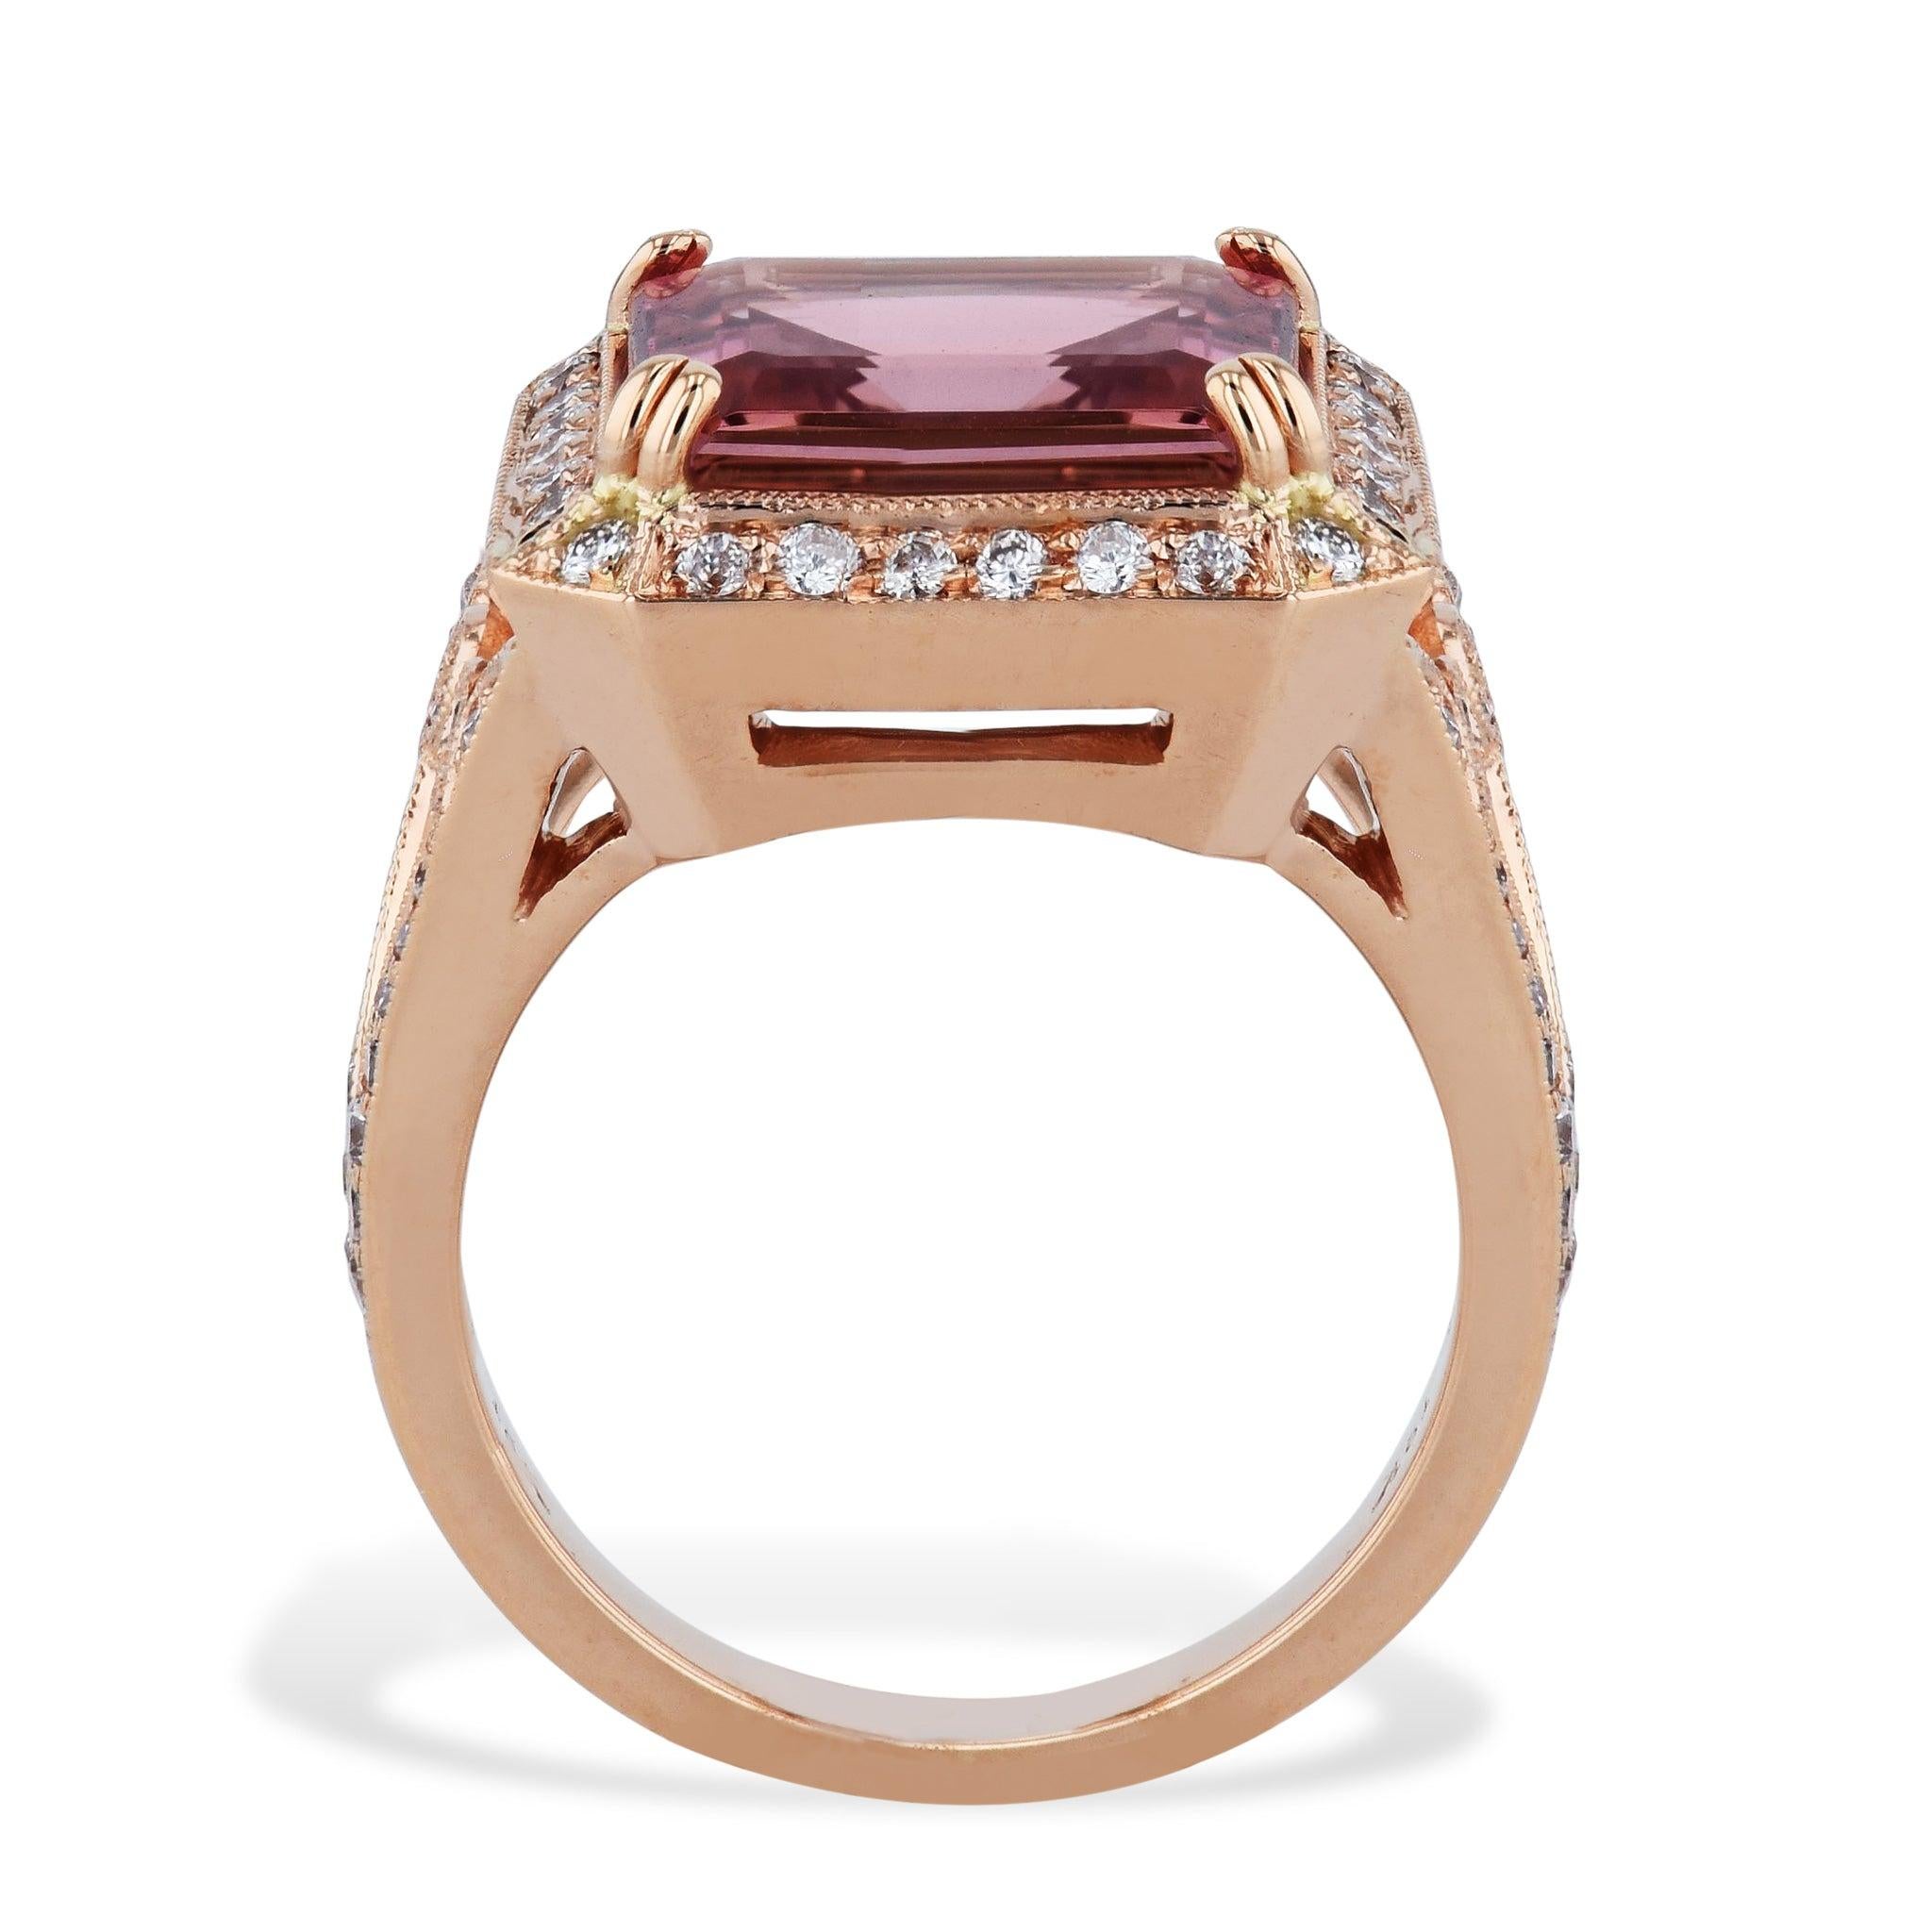 
Gönnen Sie sich diesen exquisiten Ring aus rosa Turmalin mit Smaragdschliff und Diamanten. Das aus 18 Karat Roségold gefertigte Schmuckstück besticht durch einen 5,01 Karat schweren rosa Turmalin in der Mitte, umgeben von 70 schimmernden Diamanten.